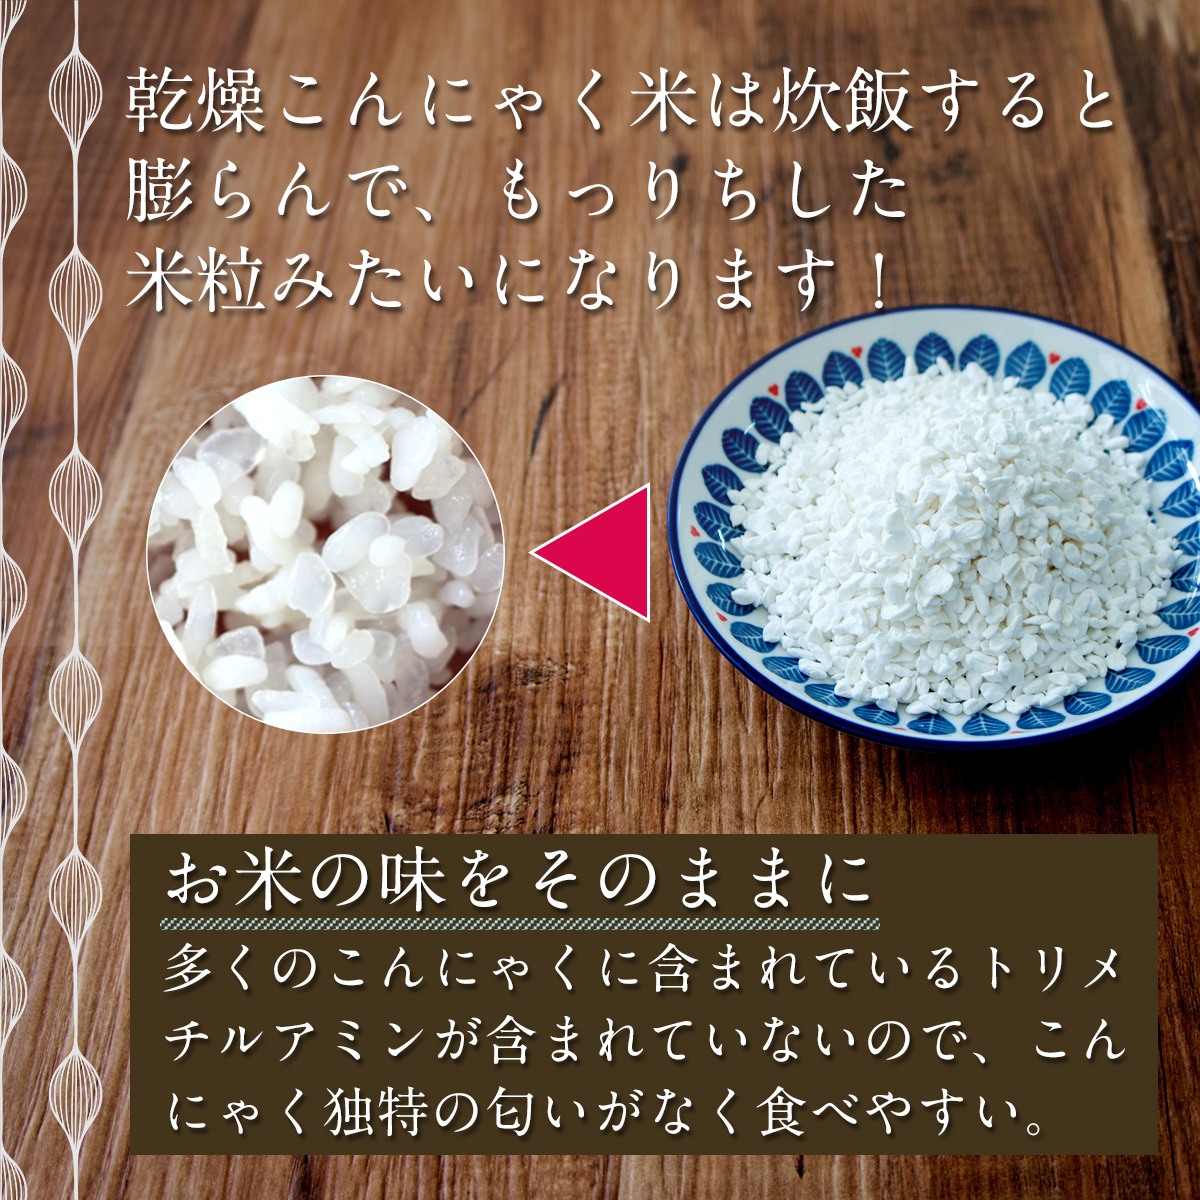 乾燥こんにゃく米は炊飯すると膨らんで、もっちりした米粒みたいになります！お米の味をそのままに多くのこんにゃくに含まれているトリメチルアミンが含まれていないので、こんにゃく独特の匂いがなく食べやすい。